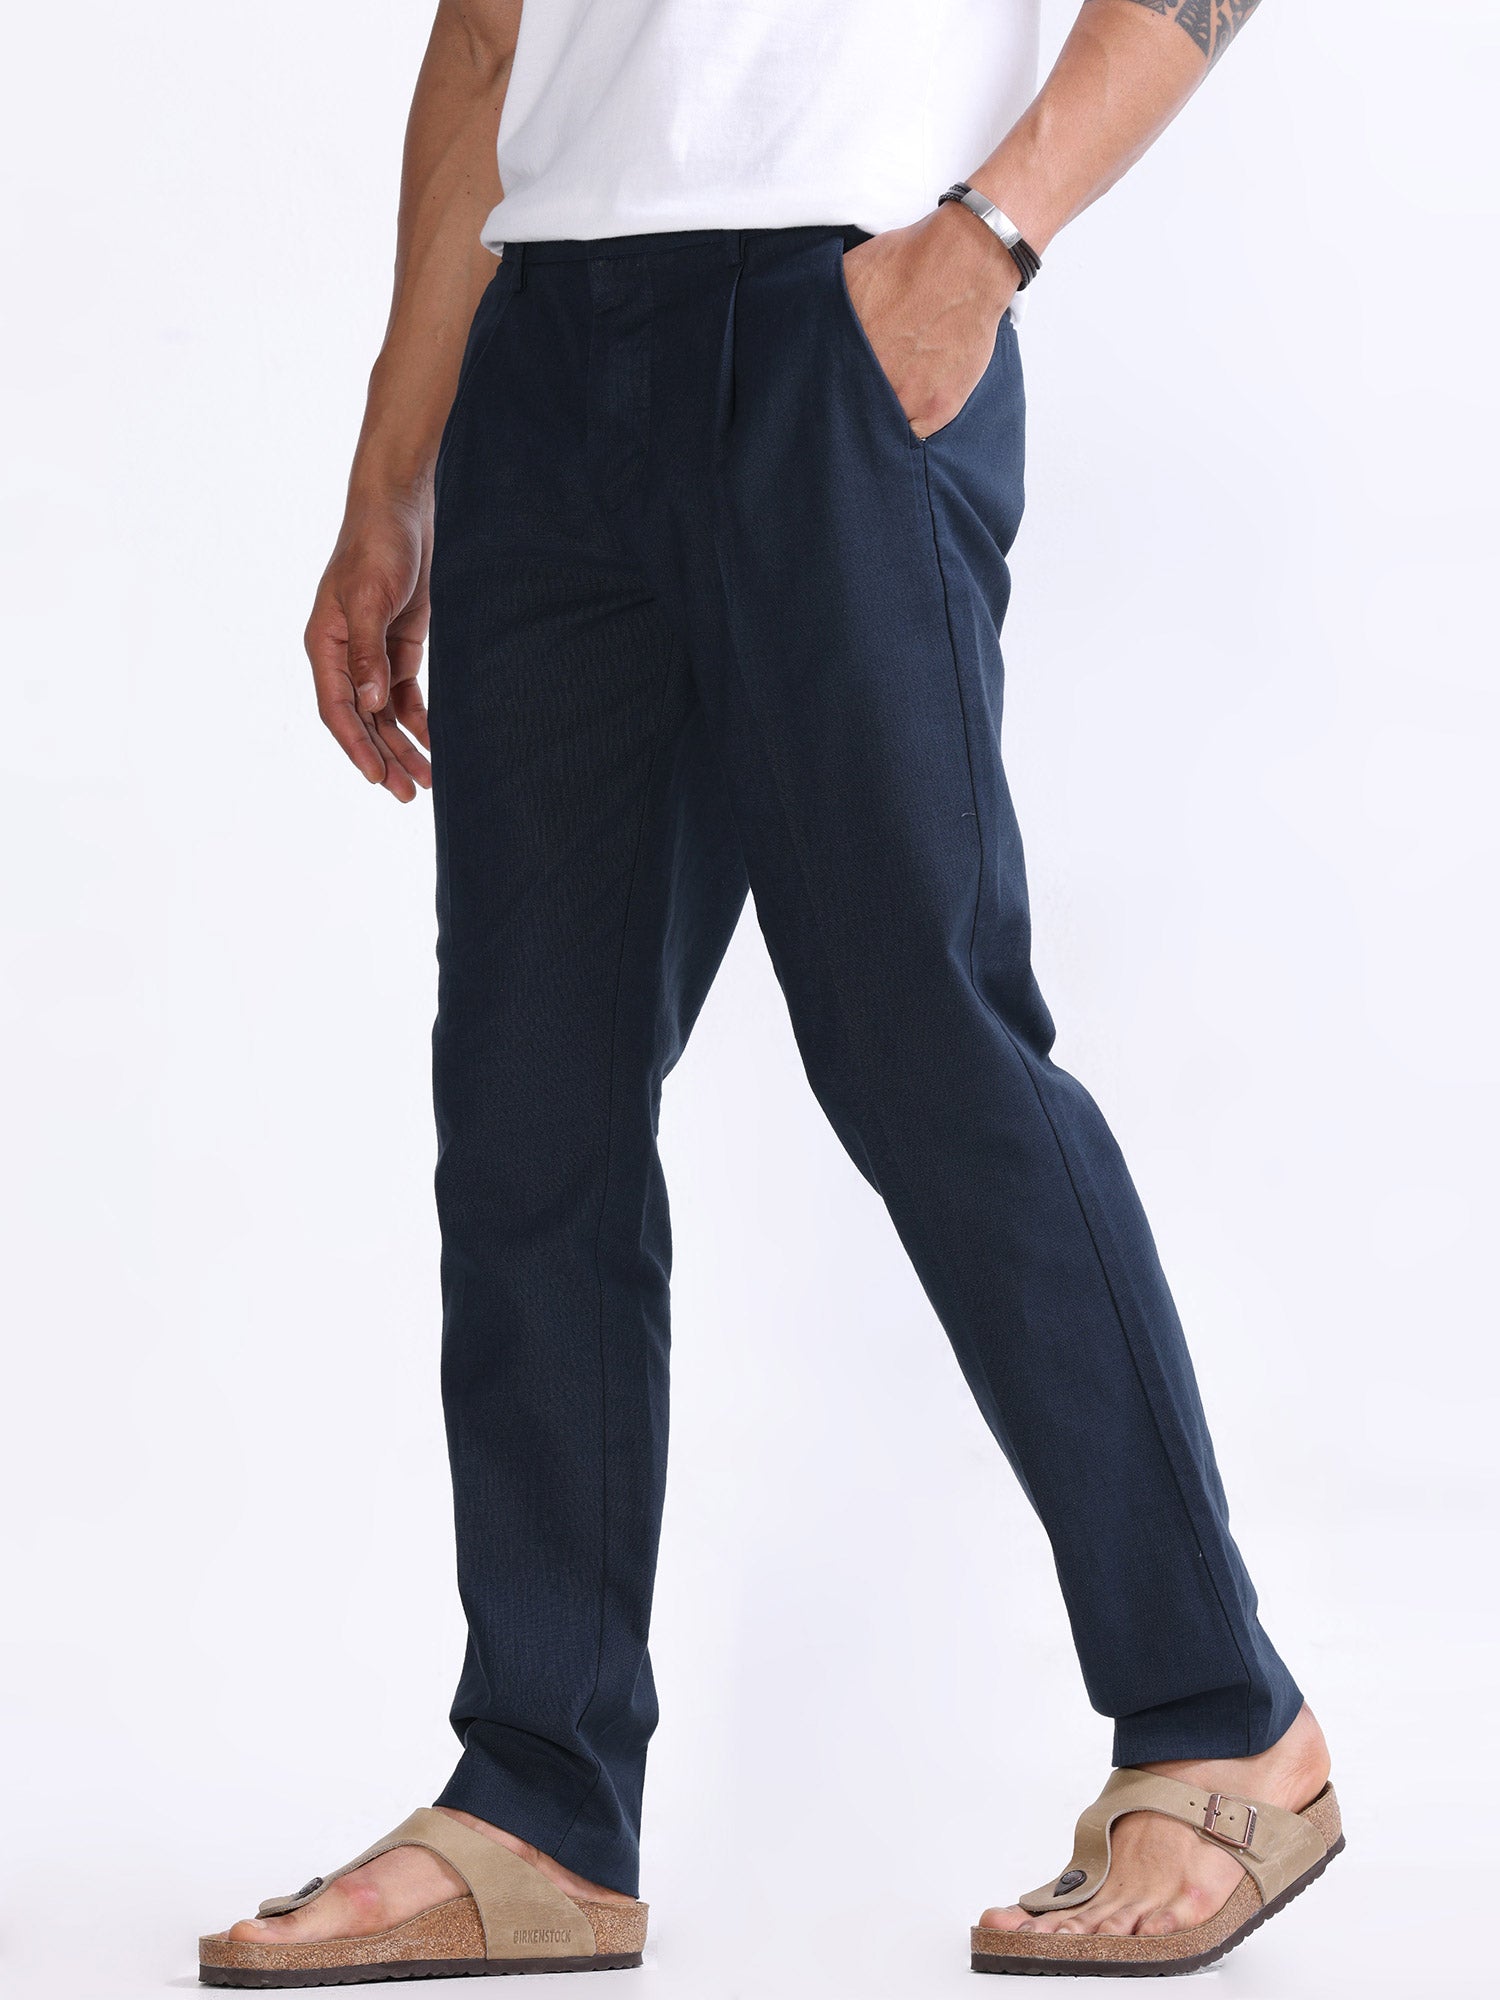 Buy Men Trouser Gurkha Pant Slim Fit Ankle Length Custom Made Buckle Men  Blue Trouser Dinner Trouser Elegant Party Wear Pant Online in India - Etsy